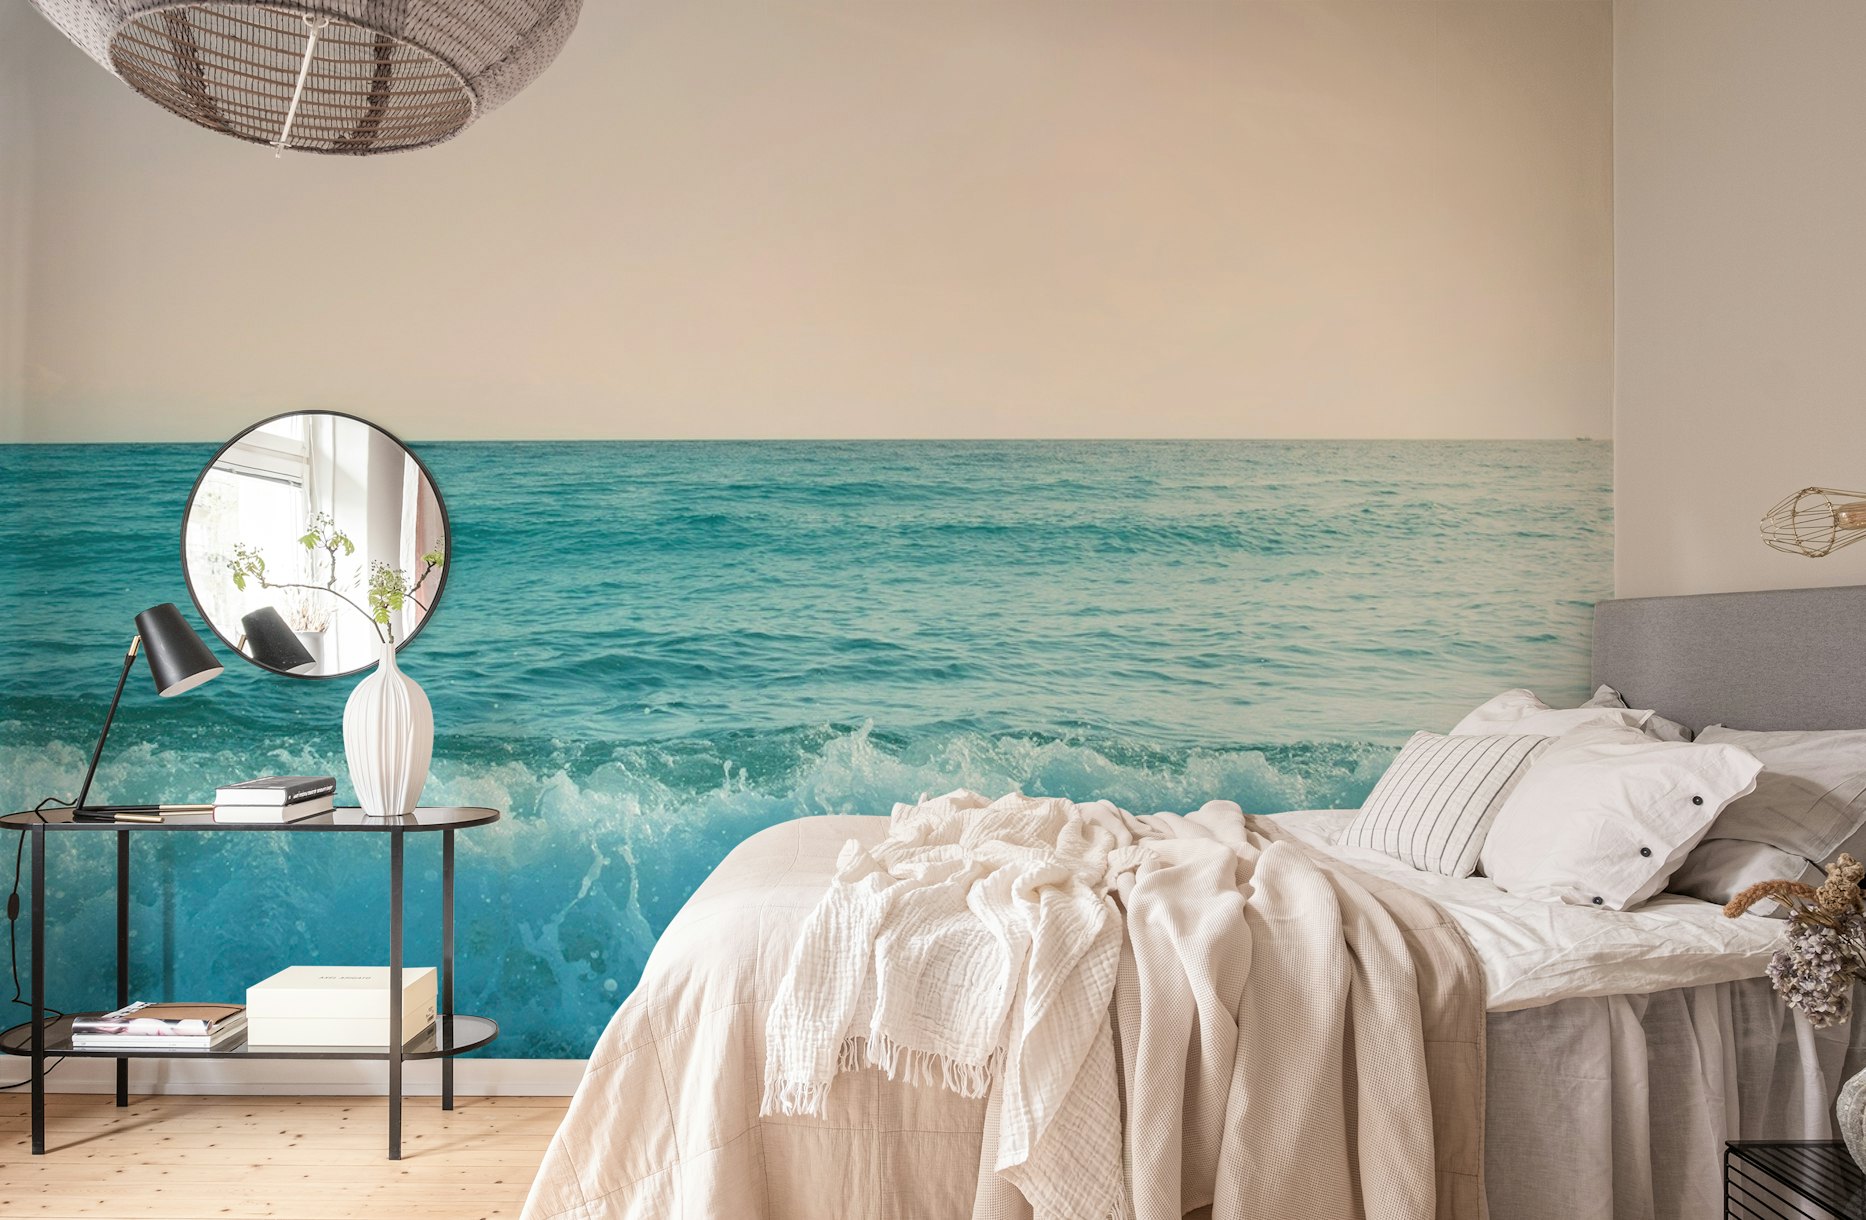 Pastel Ocean Waves Dream 1 behang